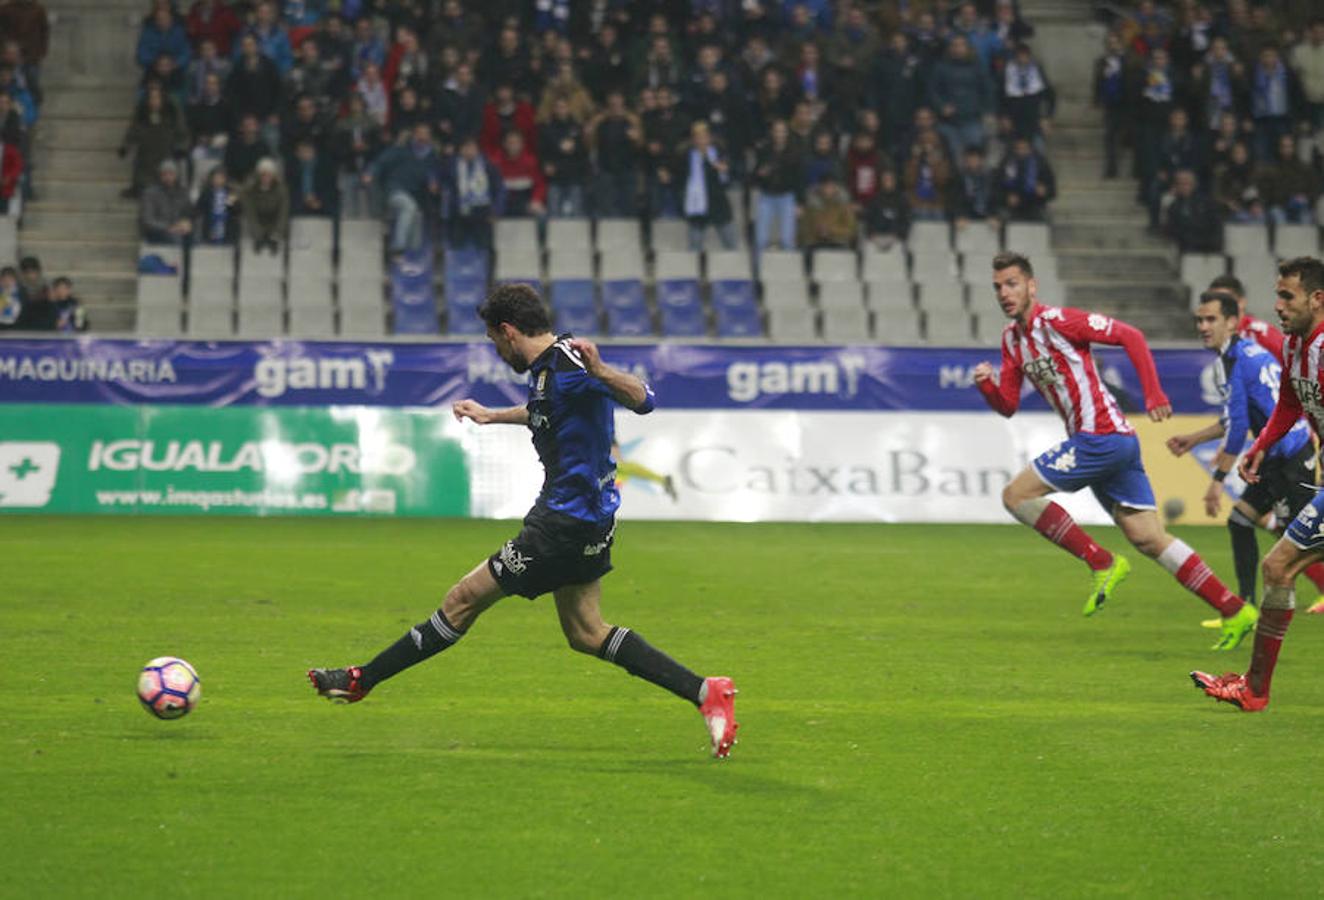 Oviedo 2 - 0 Girona